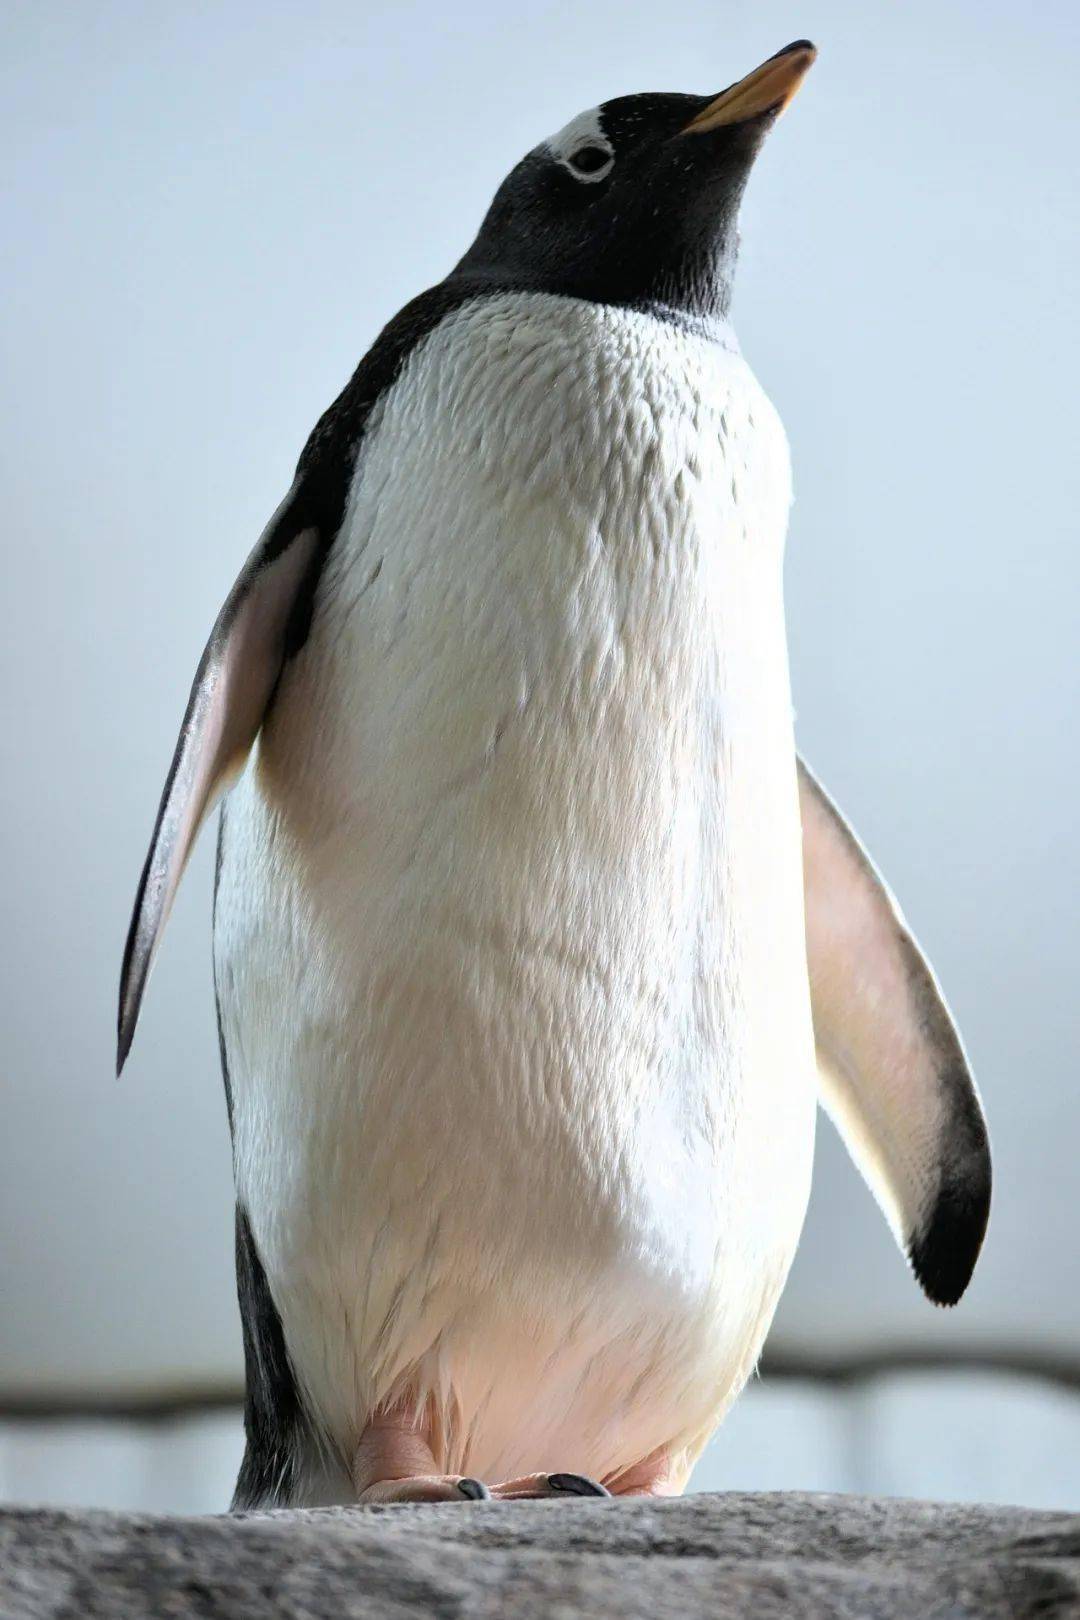 企鹅尾巴底部有会分泌油脂的腺体,聪明的企鹅会用嘴巴蘸取油脂涂抹在